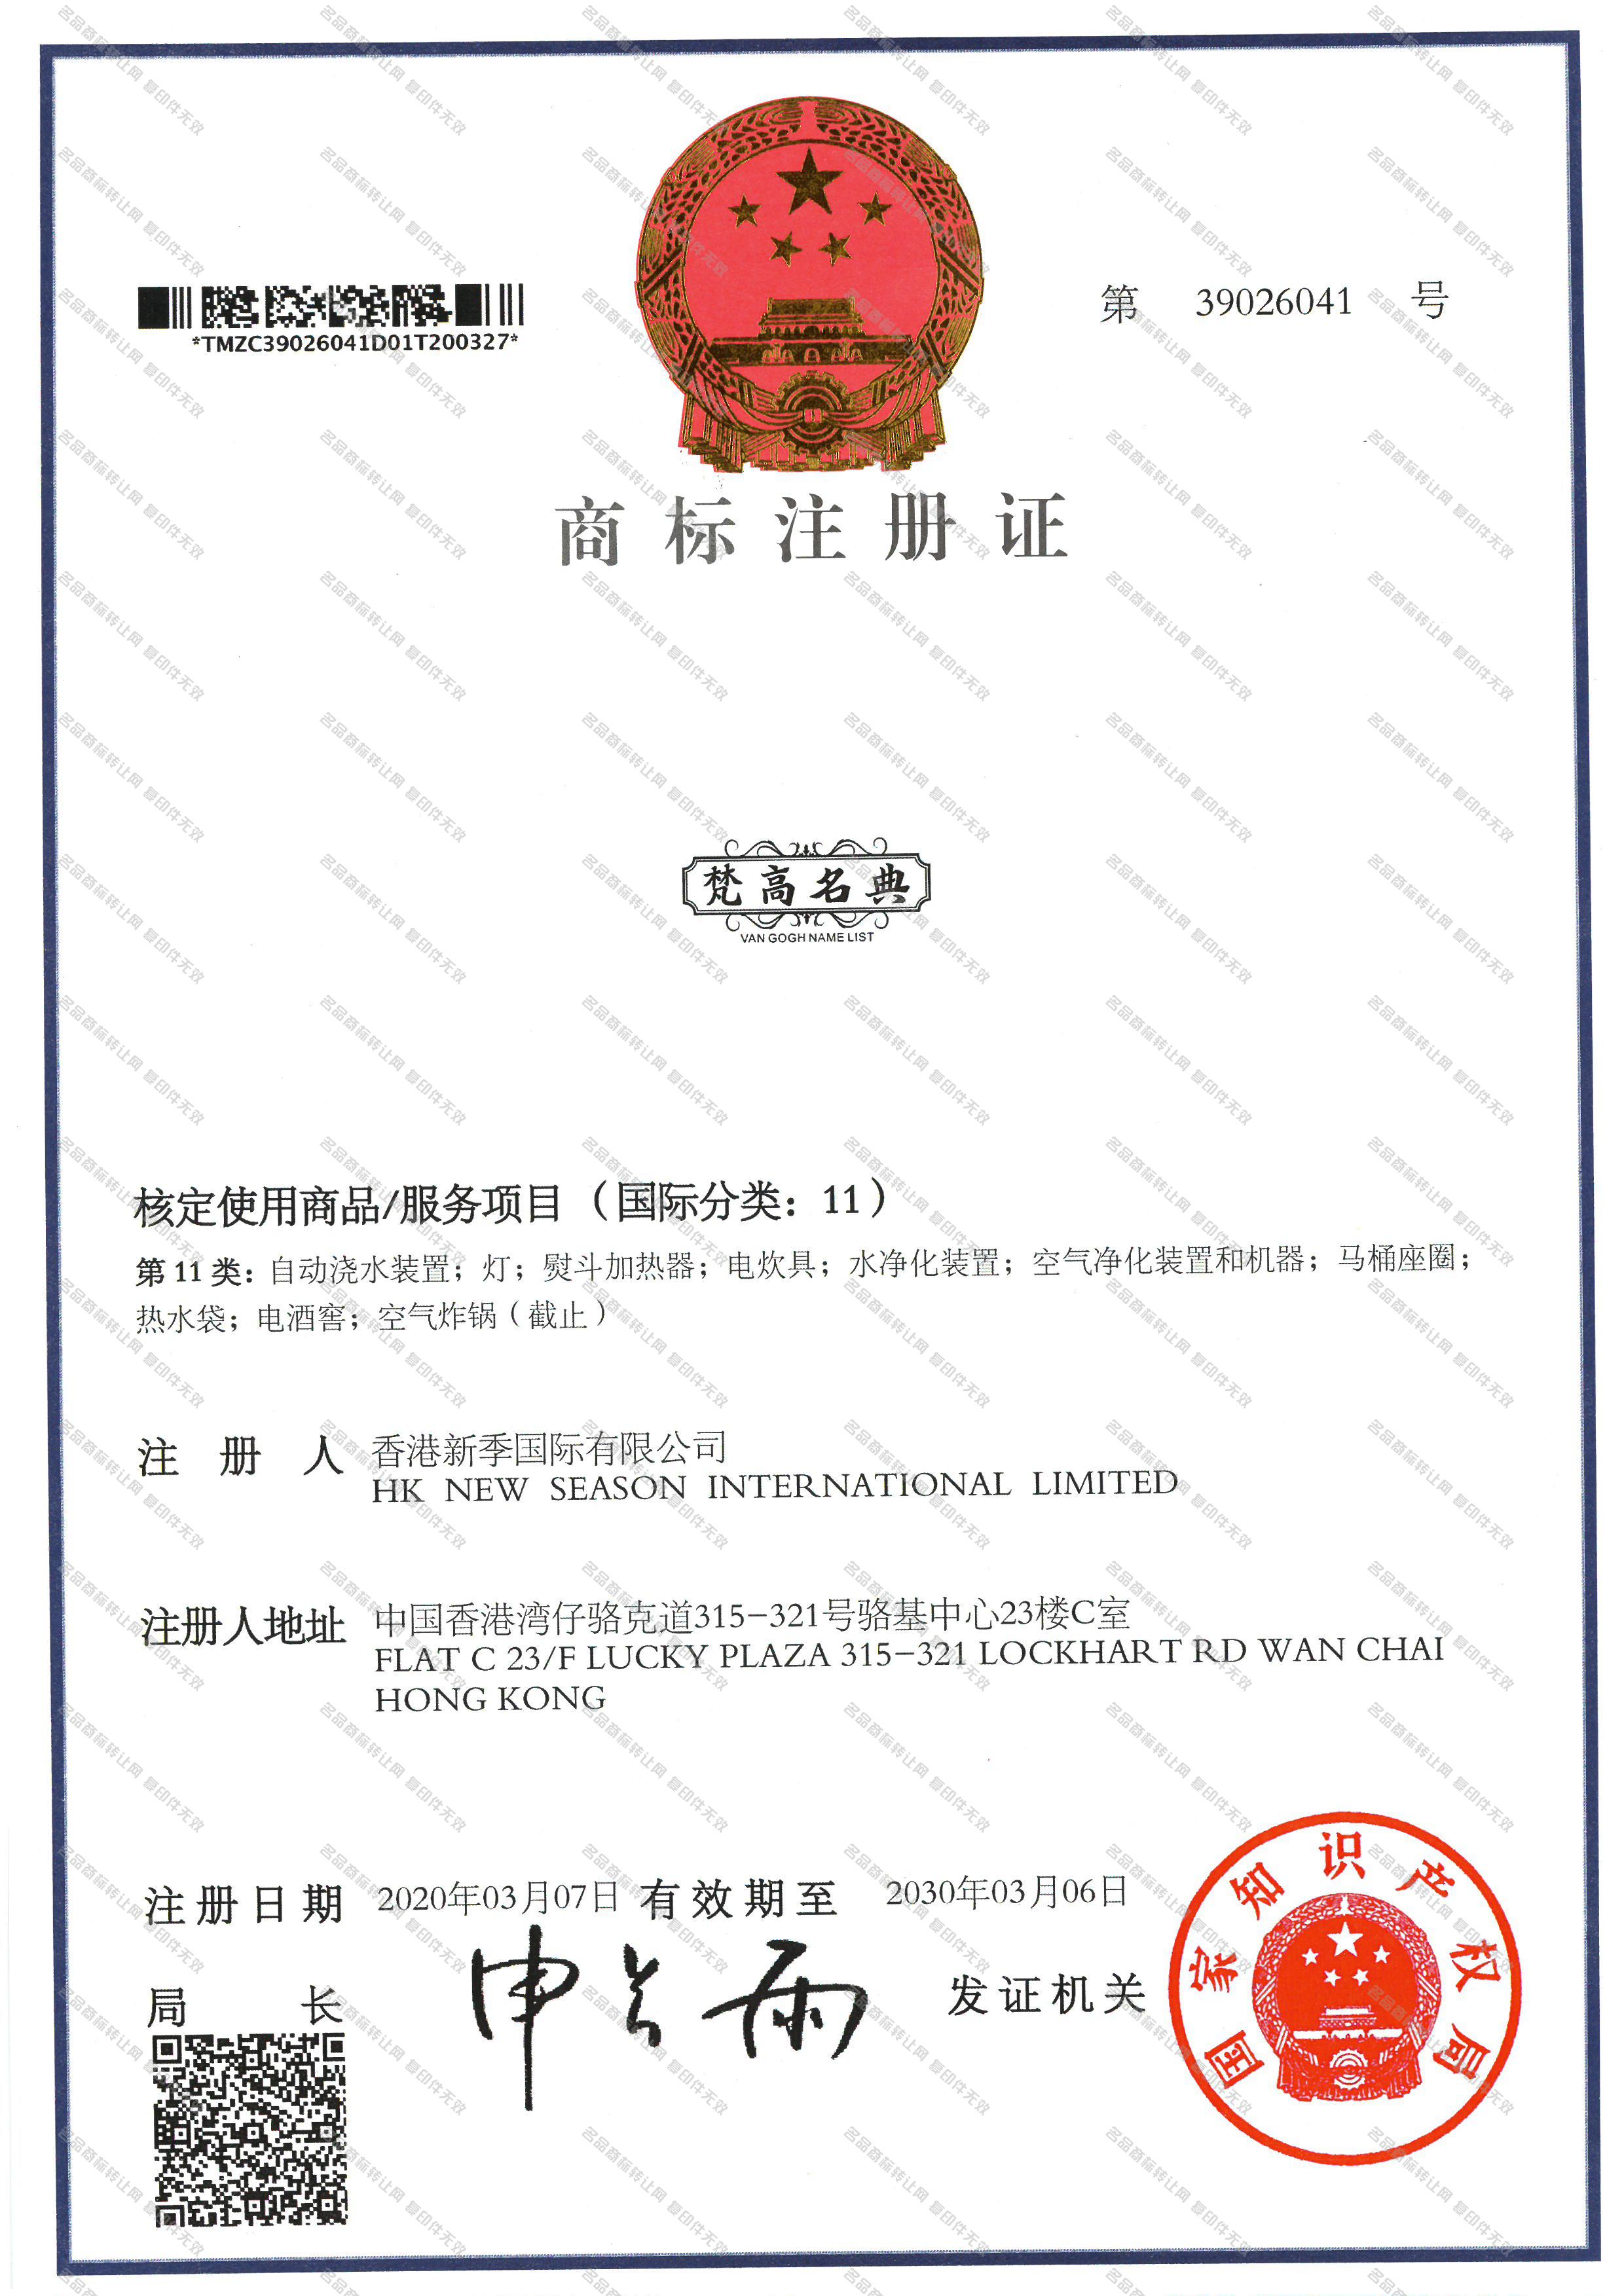 梵高名典  VAN GOGH NAME LIST注册证